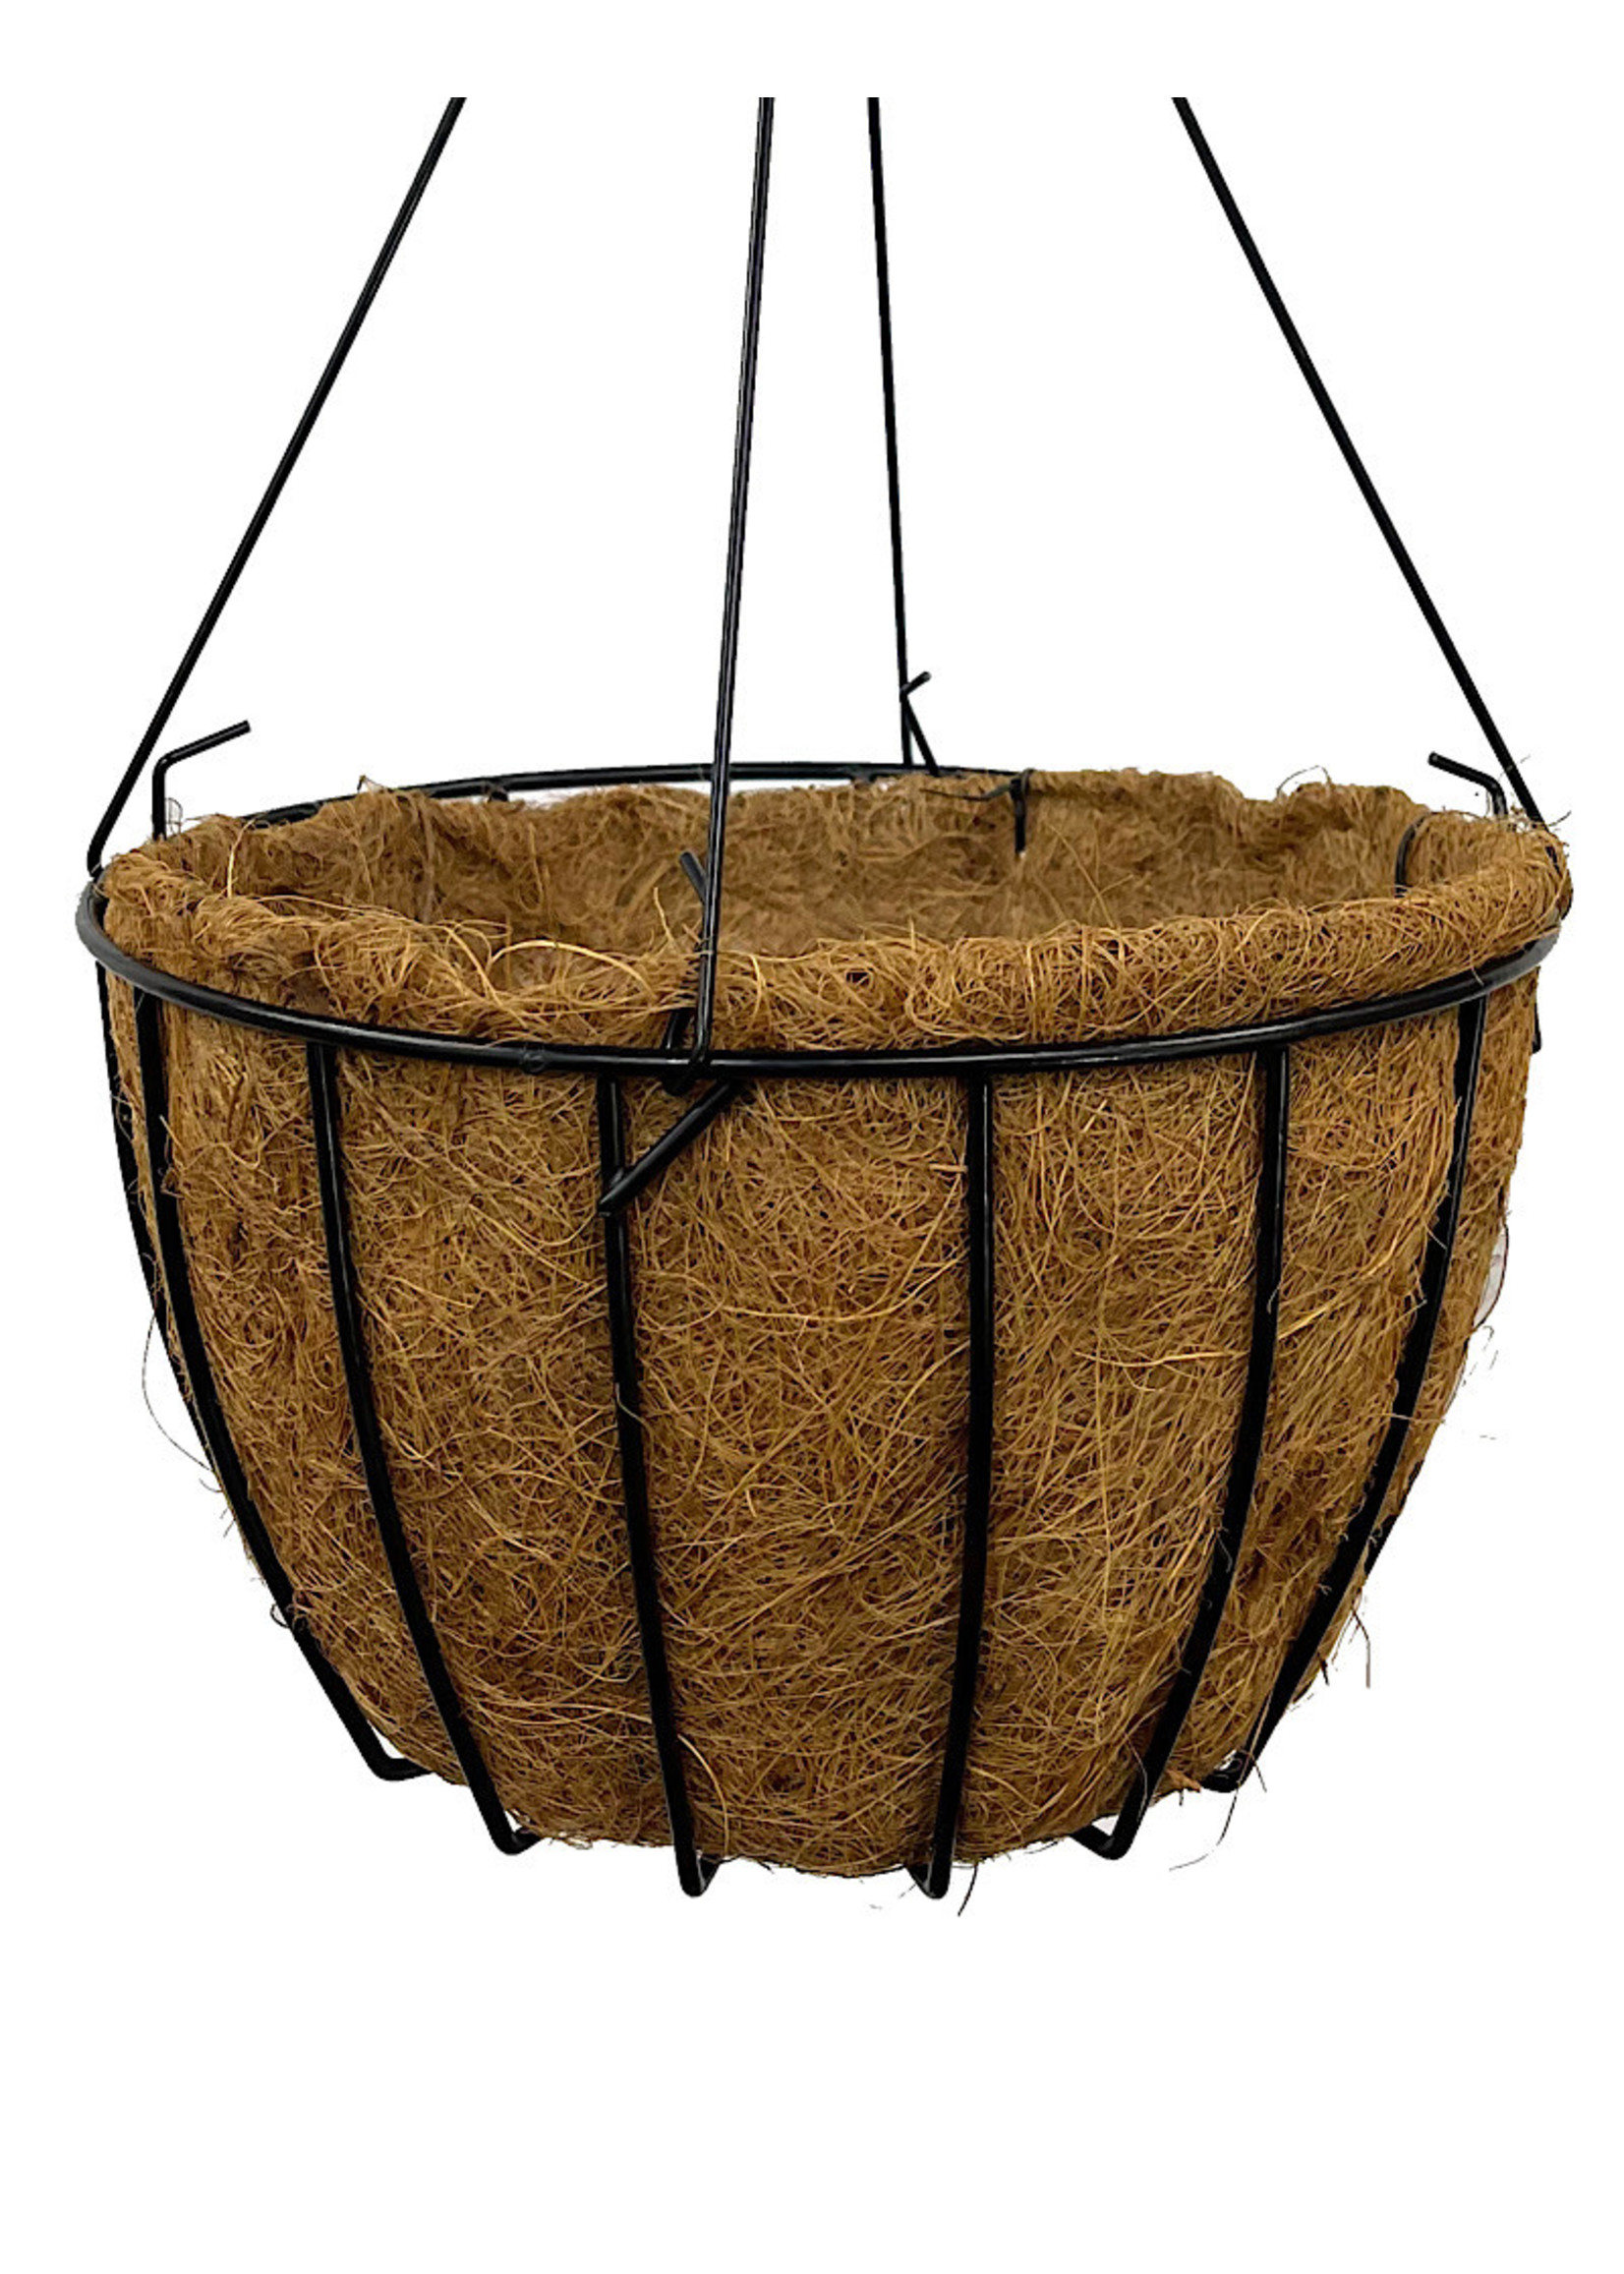 Grower Hanging Basket